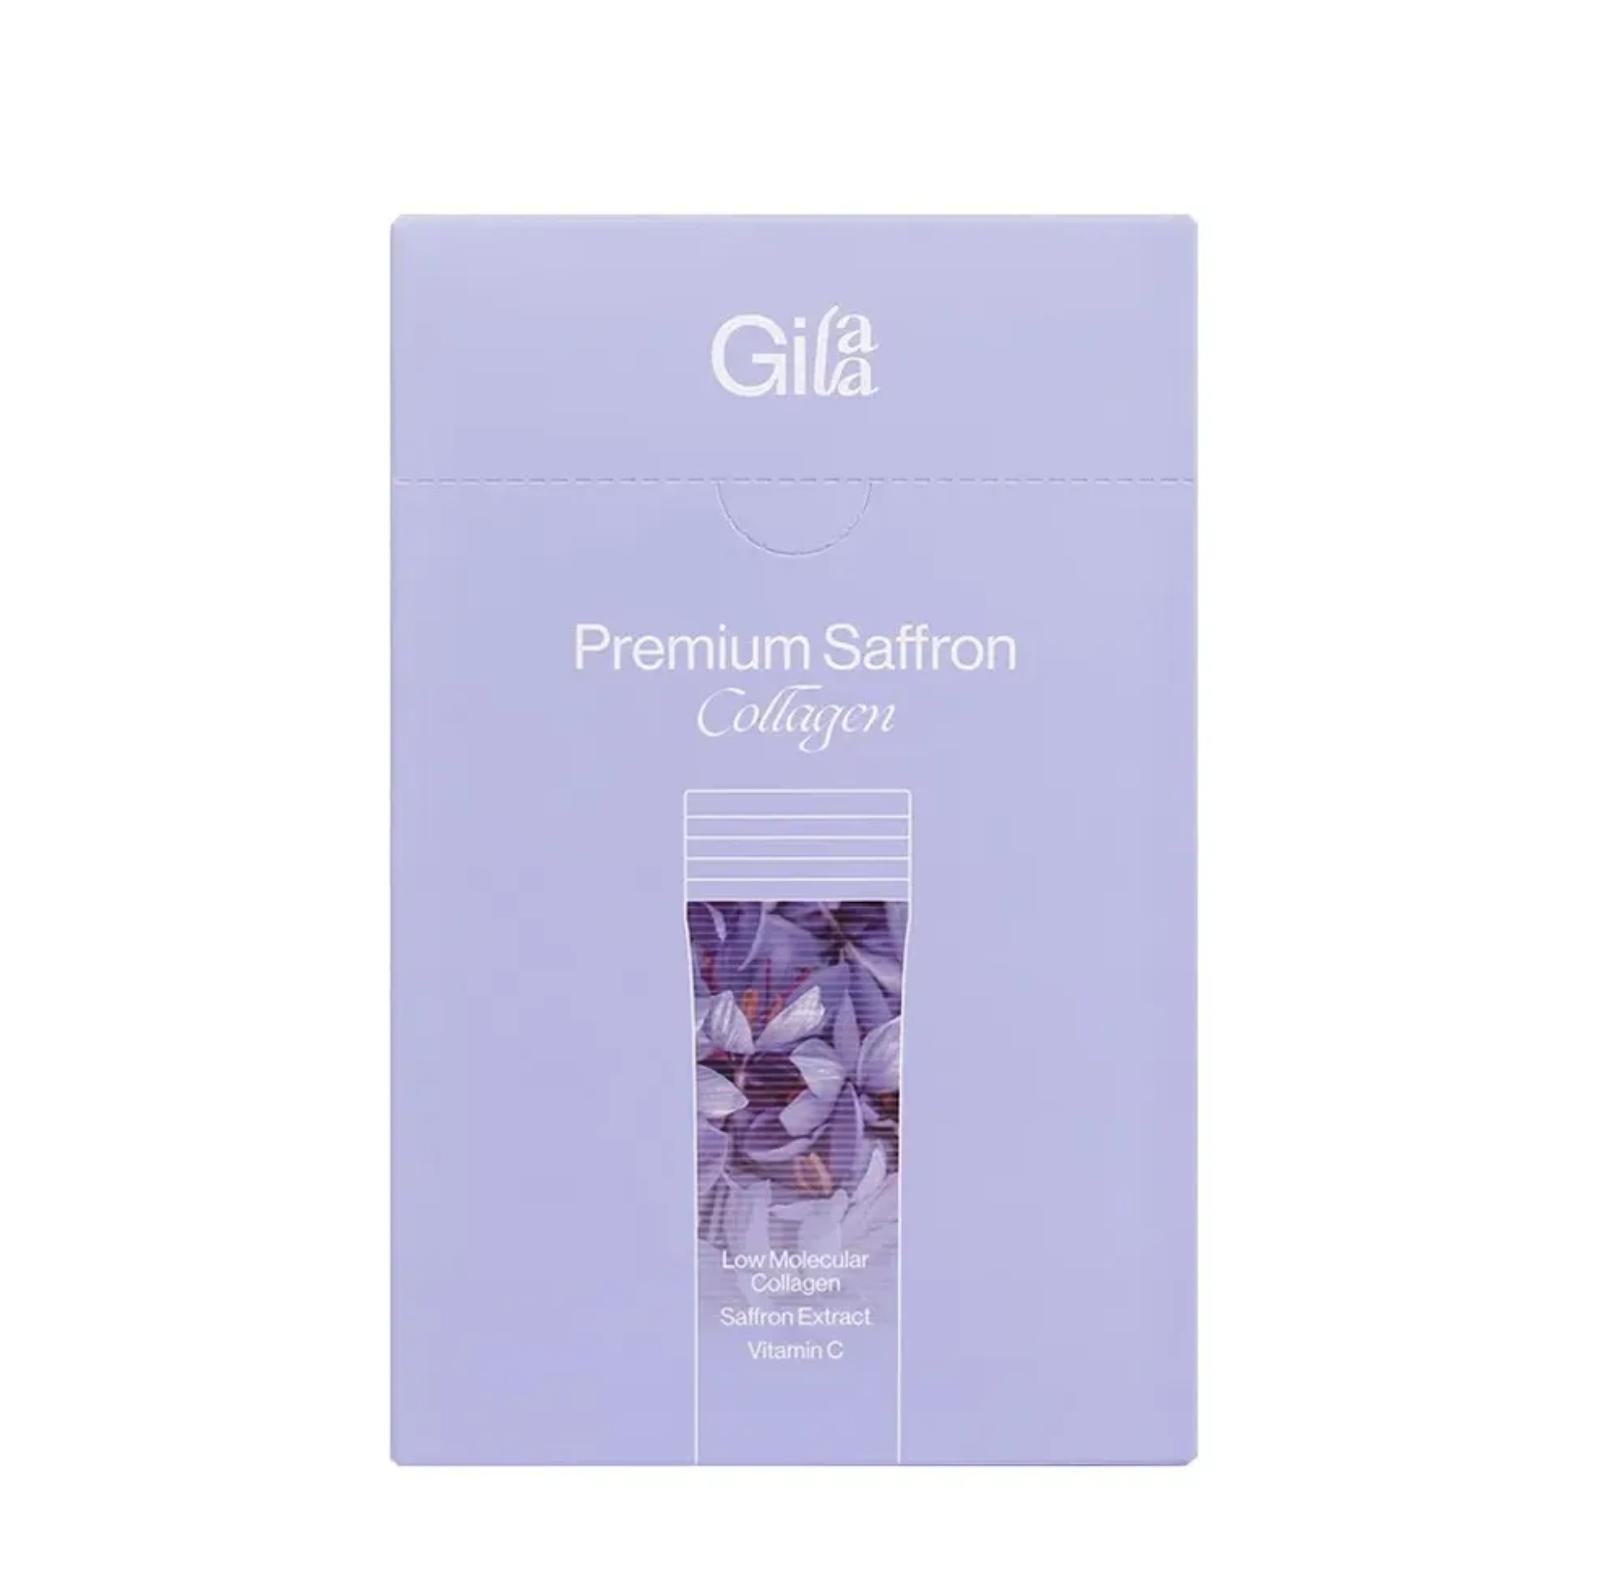 Collagen Gilaa Hàn Quốc tốt nhất dạng gói 